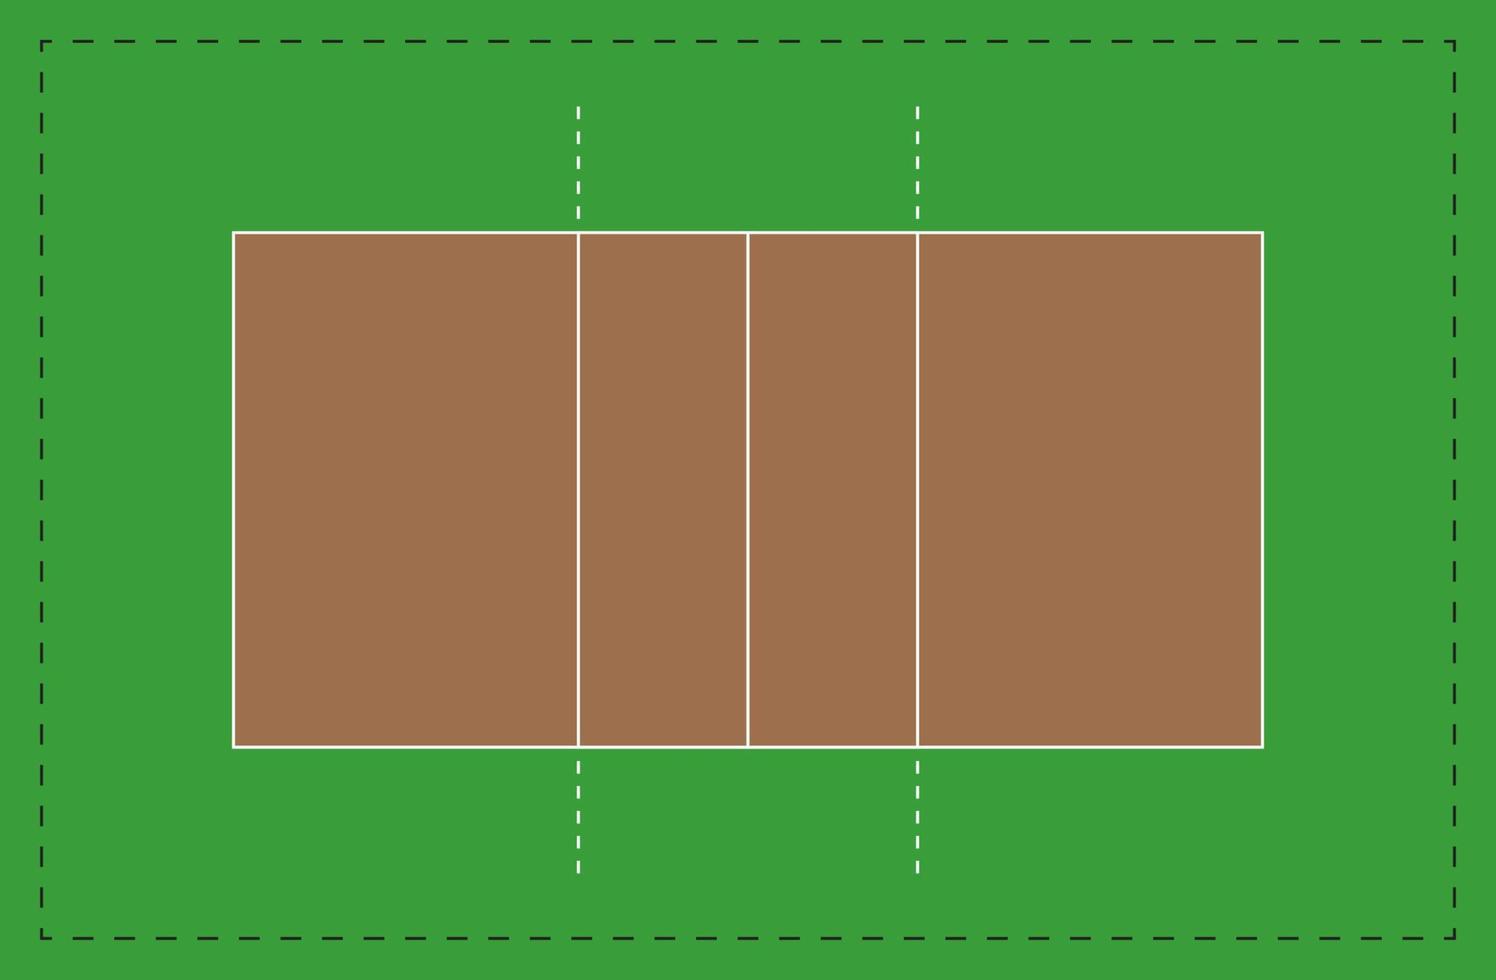 schéma vide du terrain de volley-ball avec respect des proportions standard, avec marquages, vecteur isolé.